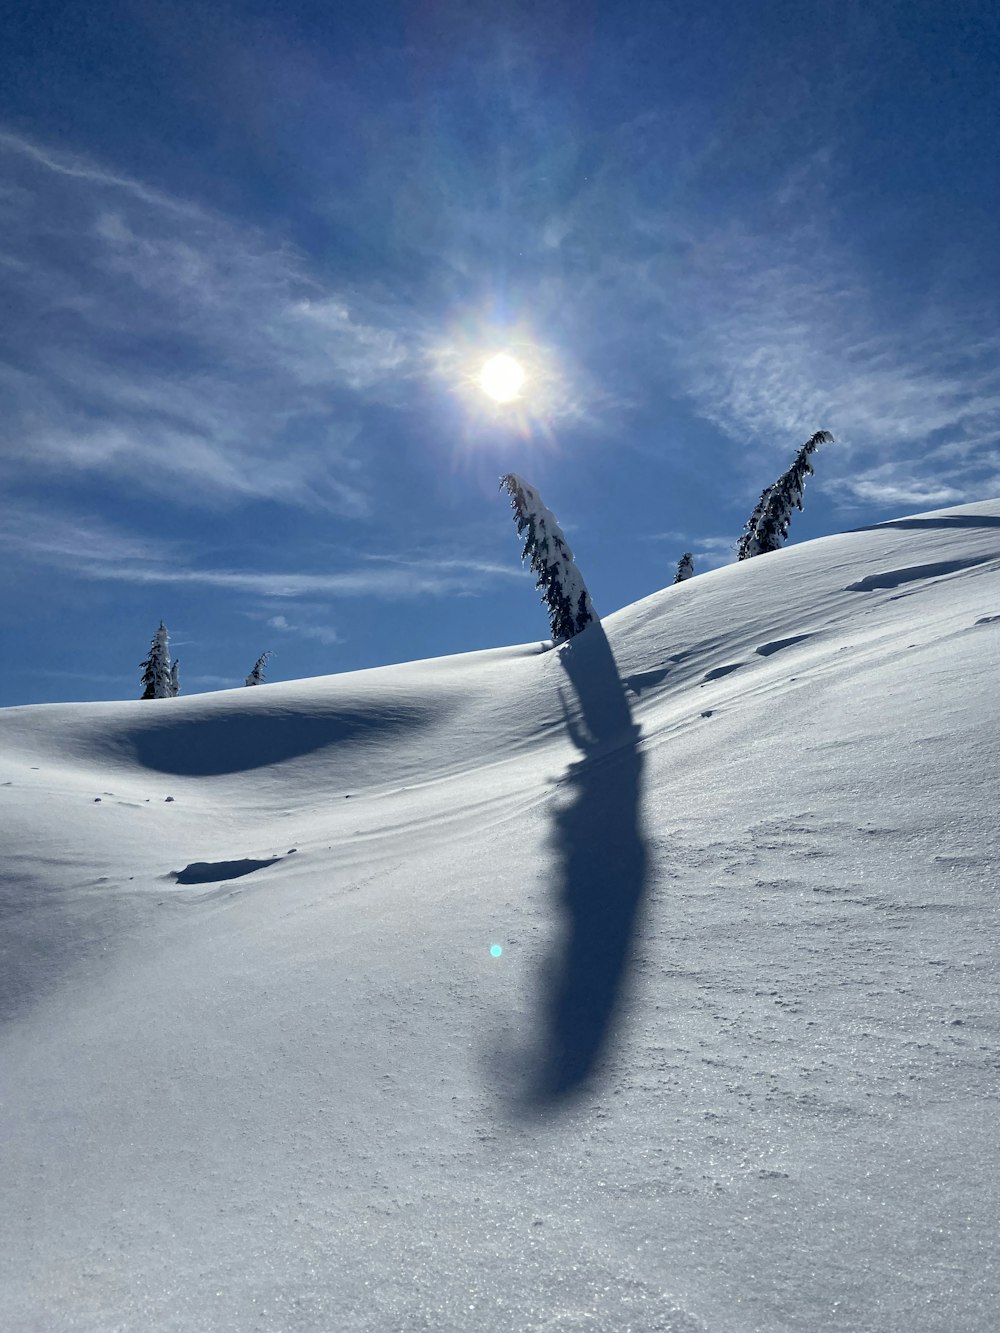 雪の中のスノーボードに乗った人の影